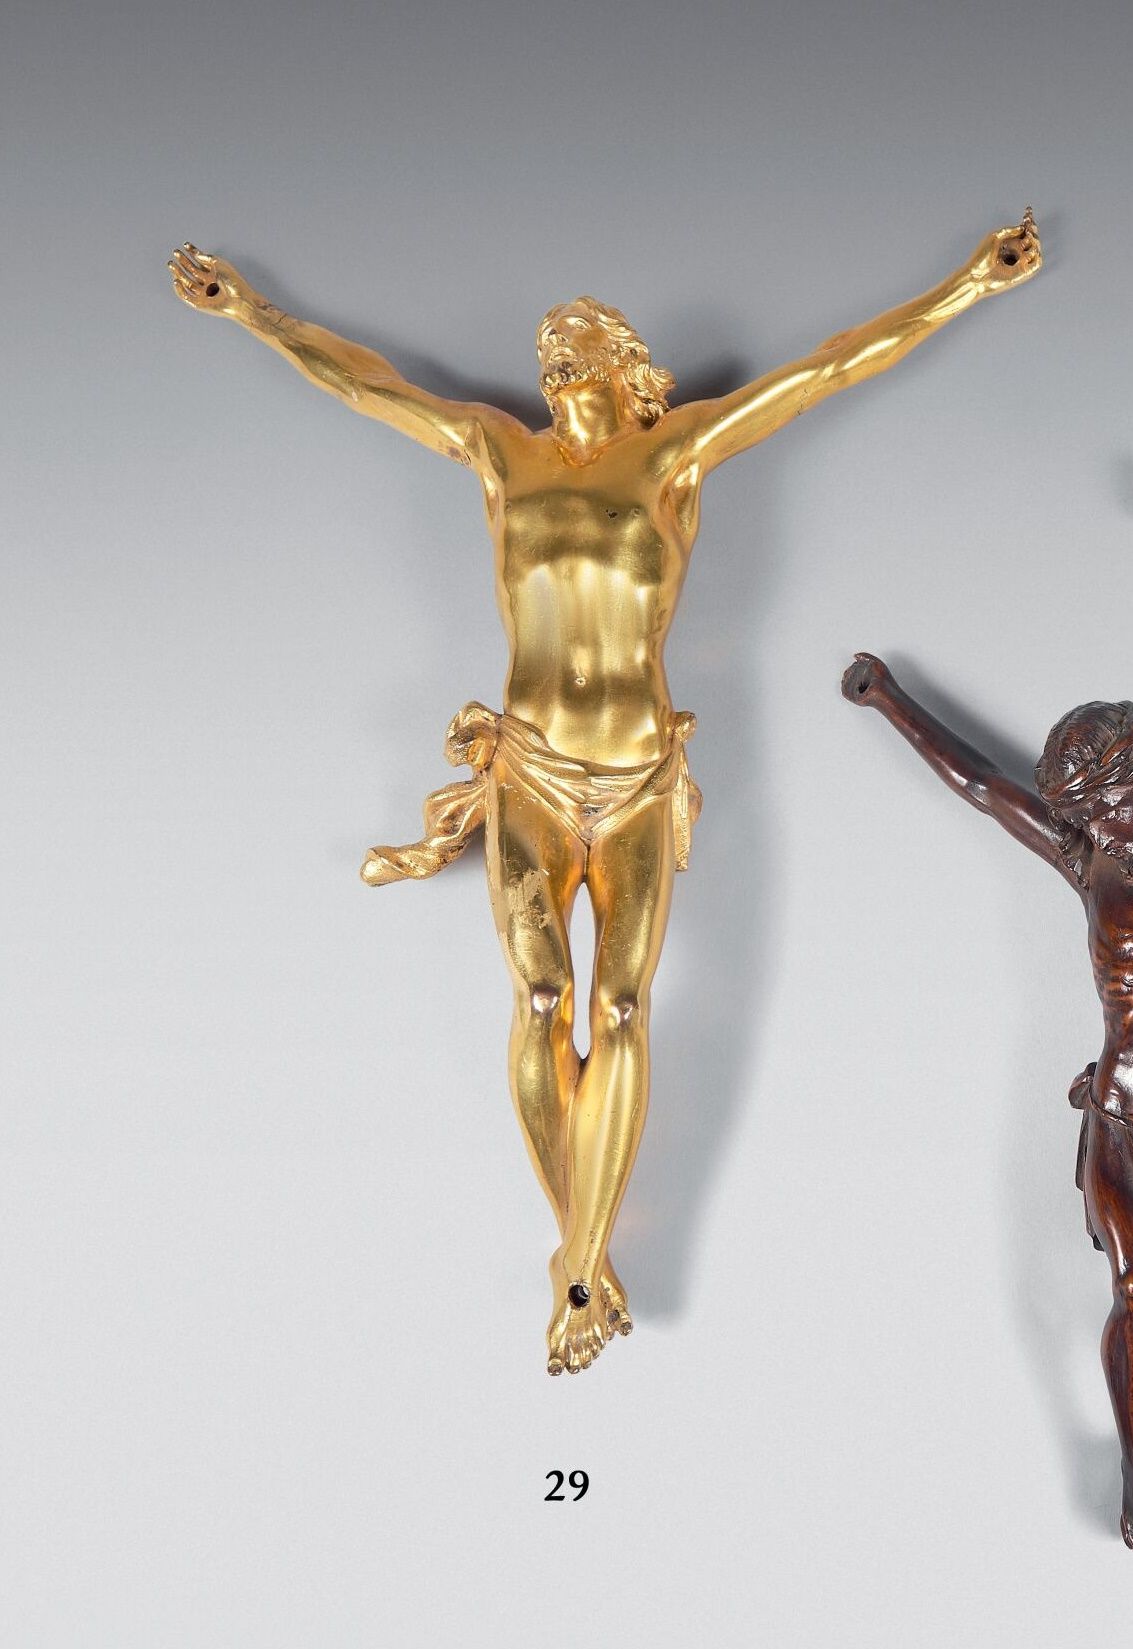 Null Cristo en bronce dorado con perizonium cincelado.
Altura: 25 cm